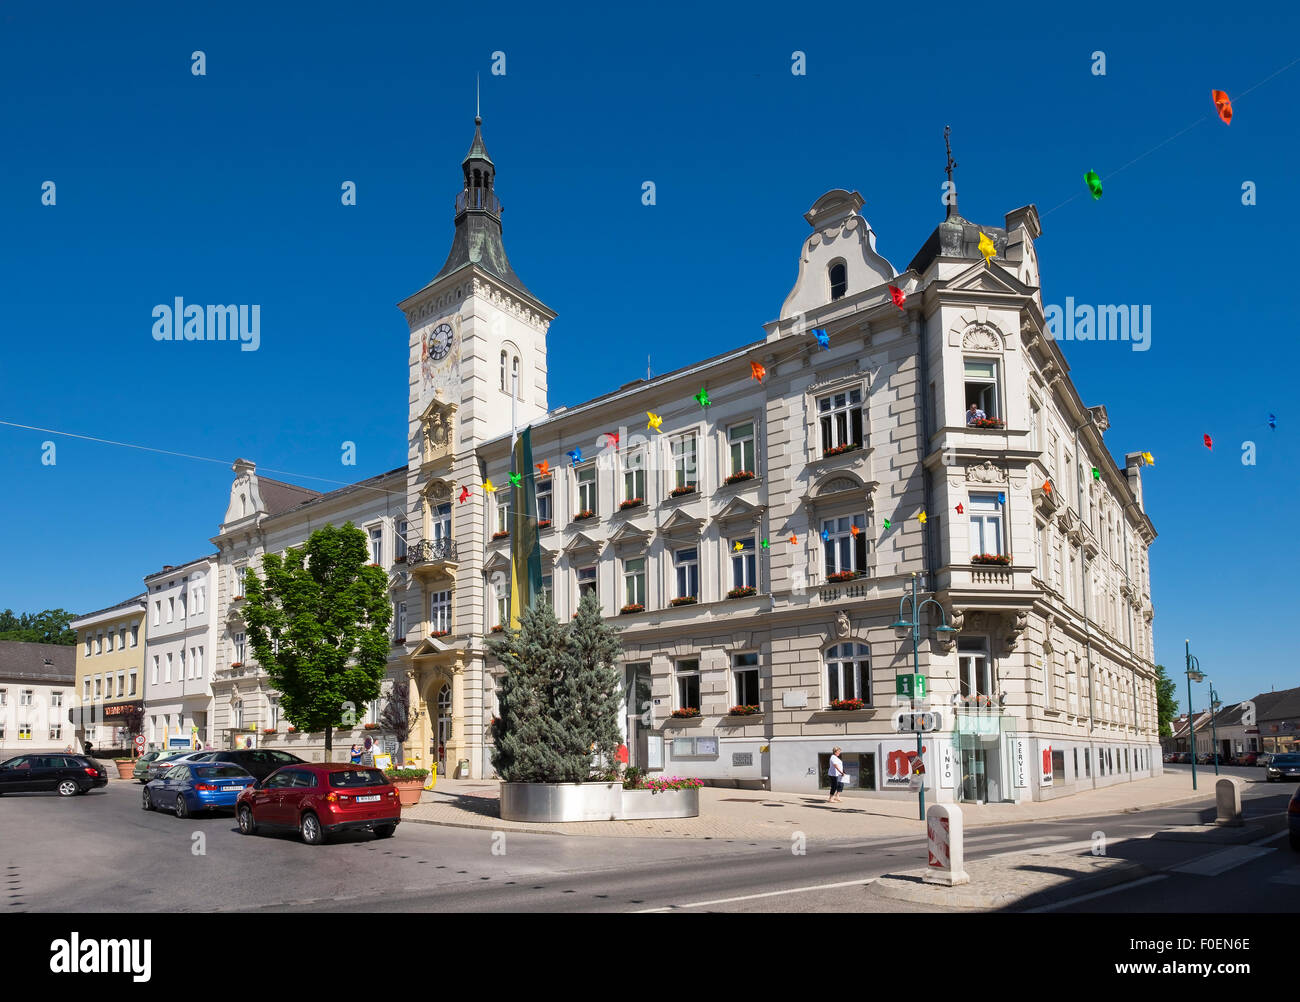 Hôtel de ville sur la place principale, Mistelbach, Weinviertel, Basse Autriche, Autriche Banque D'Images